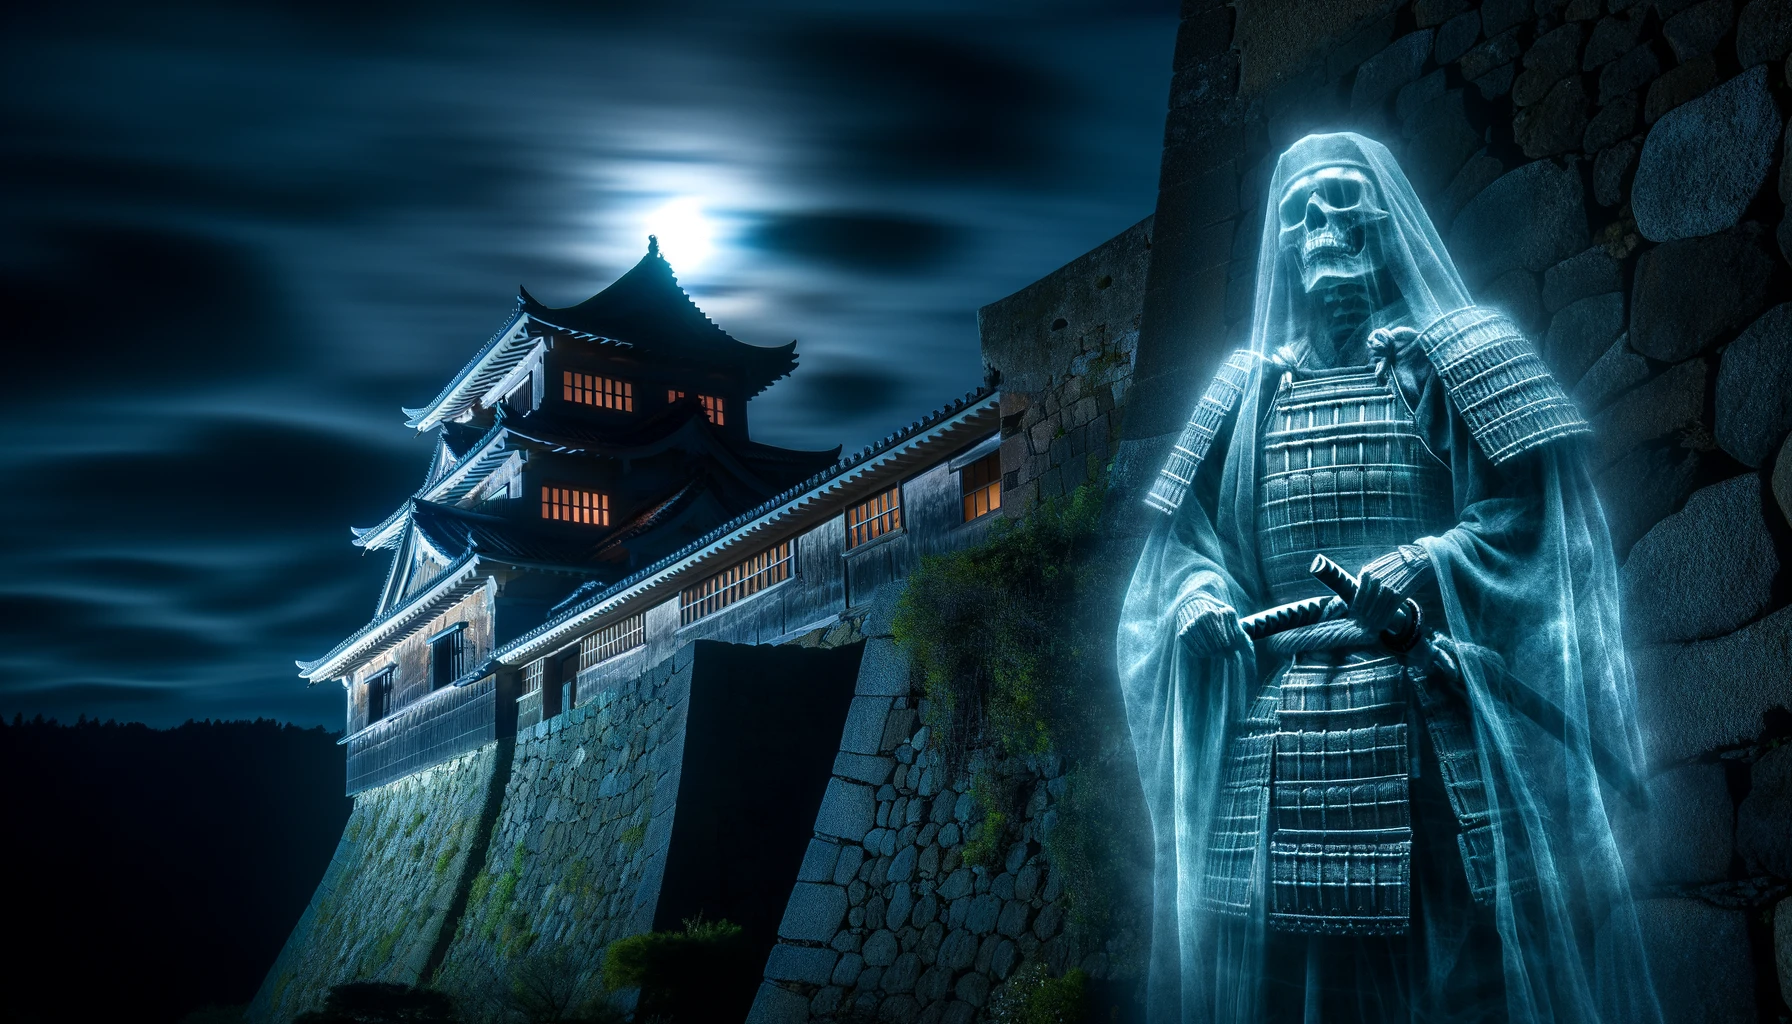 平戸市の平戸城で、古い城壁から現れる武士の霊の幽霊的なシーン。闇に包まれた城に月がかすかな光を投げかけ、武士の霊は伝統的な鎧を身にまとい、神秘的なオーラに囲まれている。